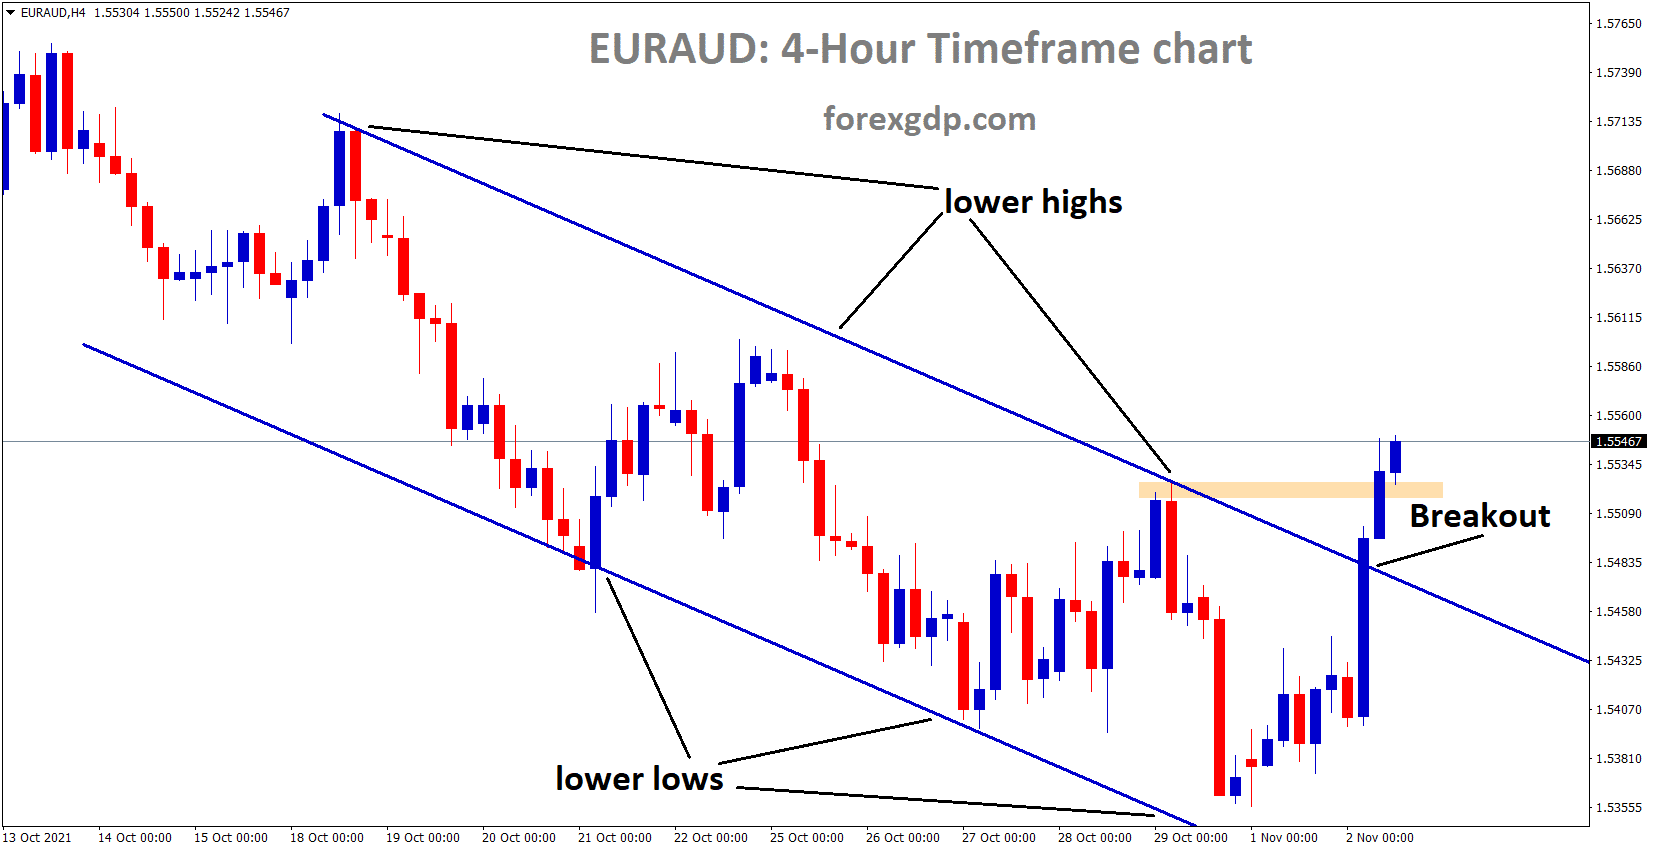 EURAUD has broken the Descending channel